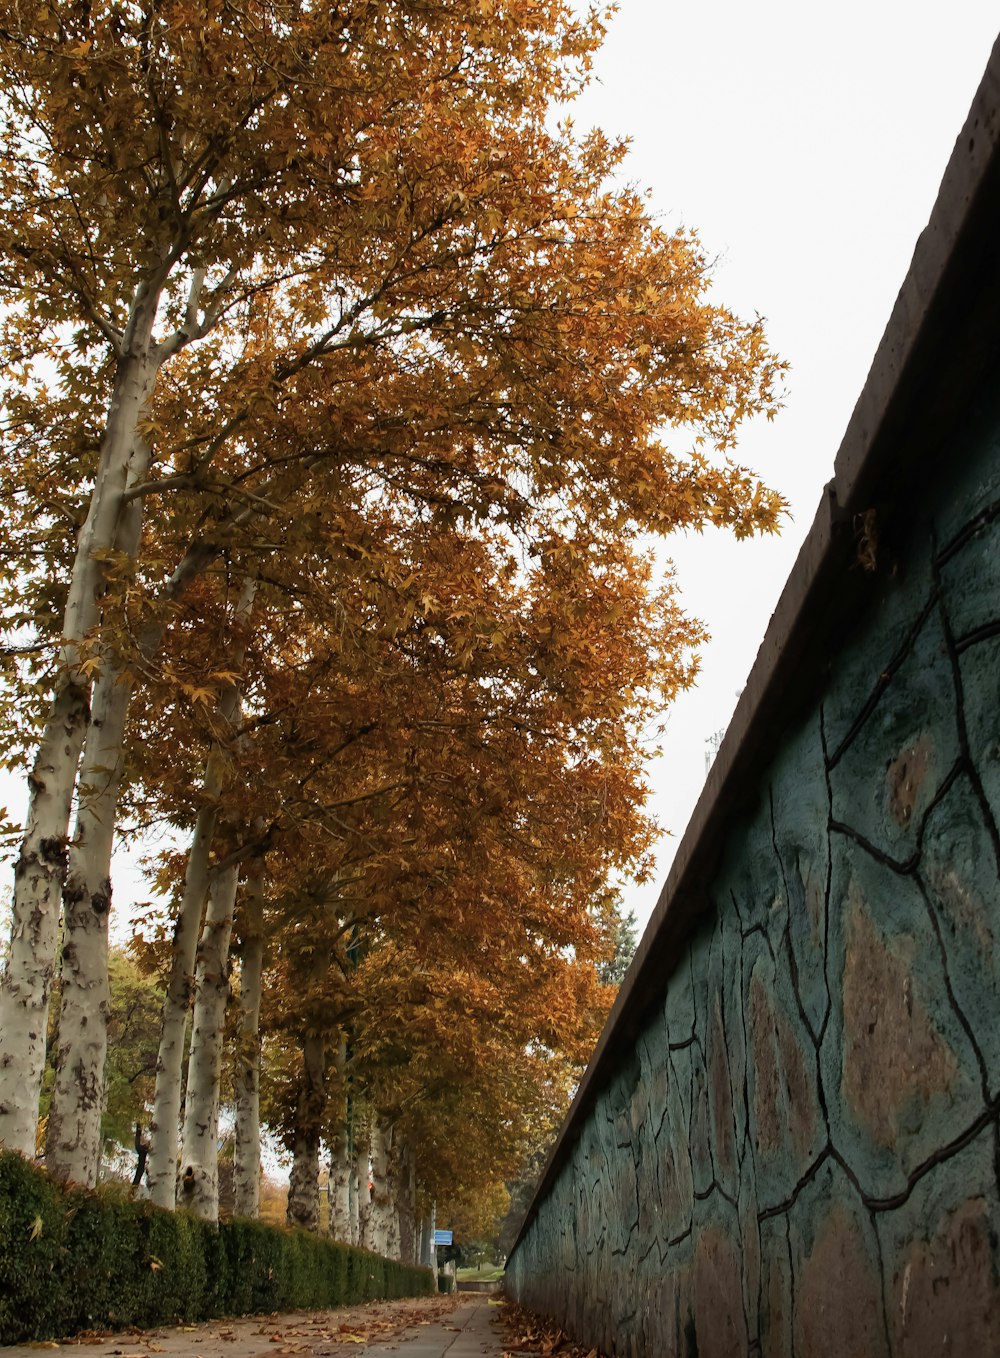 alberi marroni e verdi accanto al muro di cemento grigio